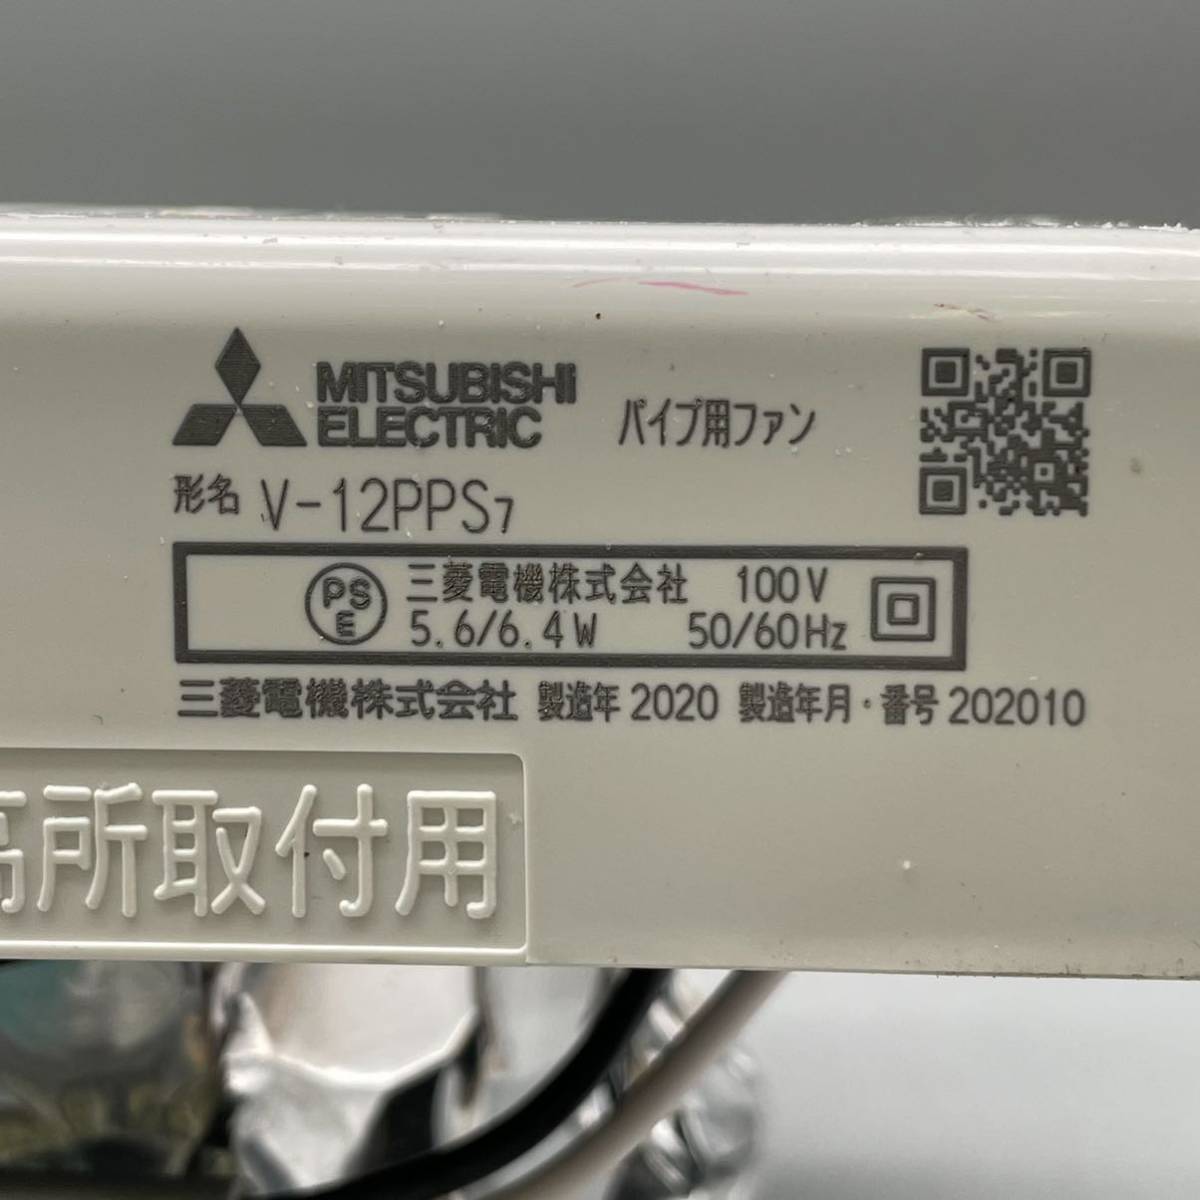 MITSUBISHI 三菱 換気扇 パイプ用ファン V-12PPS7 浴室 トイレ 洗面所用 ダクト 角形格子グリル 電源 100V 風圧式シャッター付き 2020年製_画像7